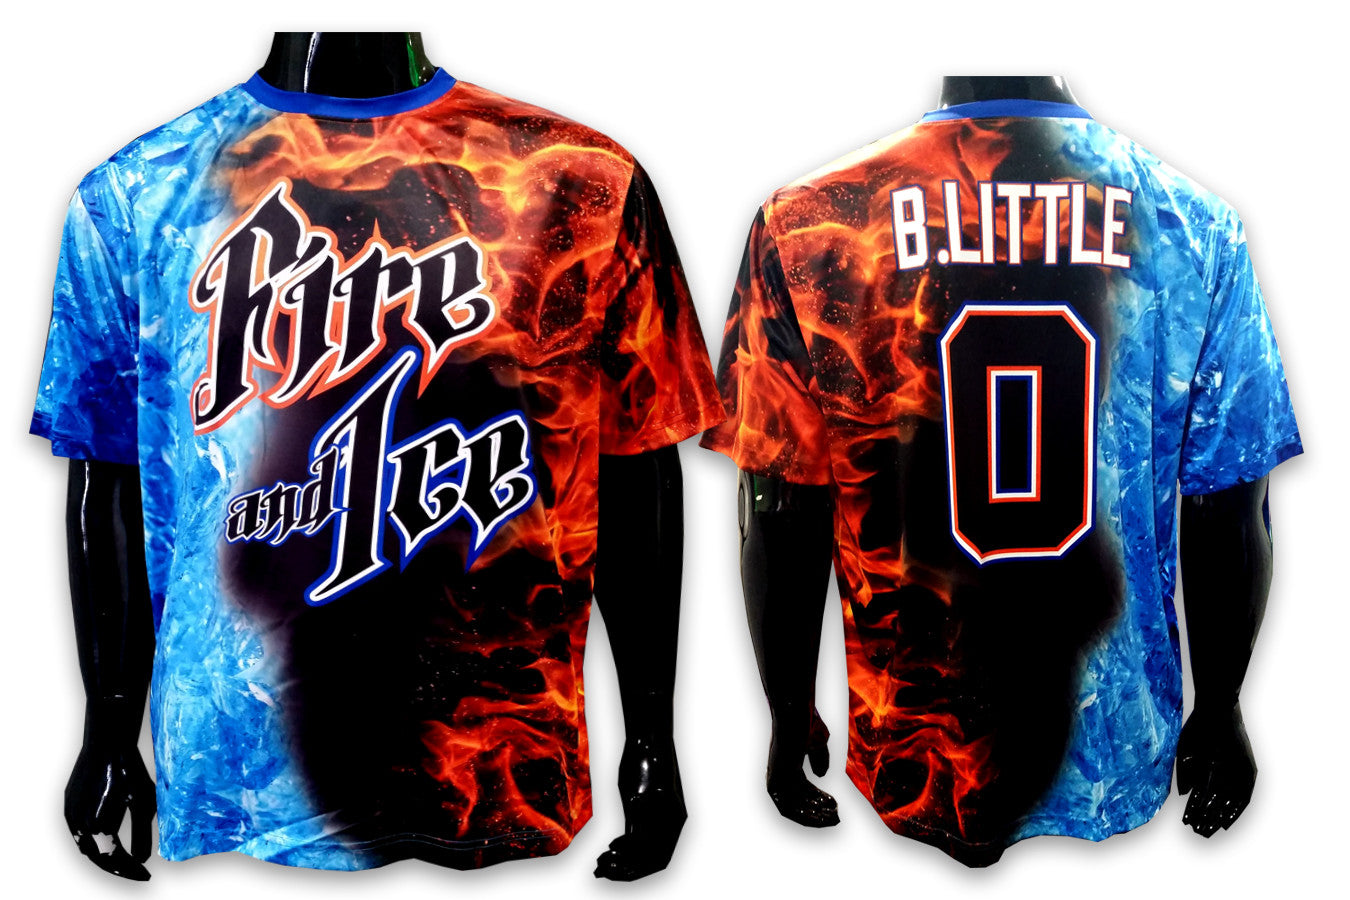 Fire and Ice - Custom Full-Dye Jersey - Dirty Sports Wear